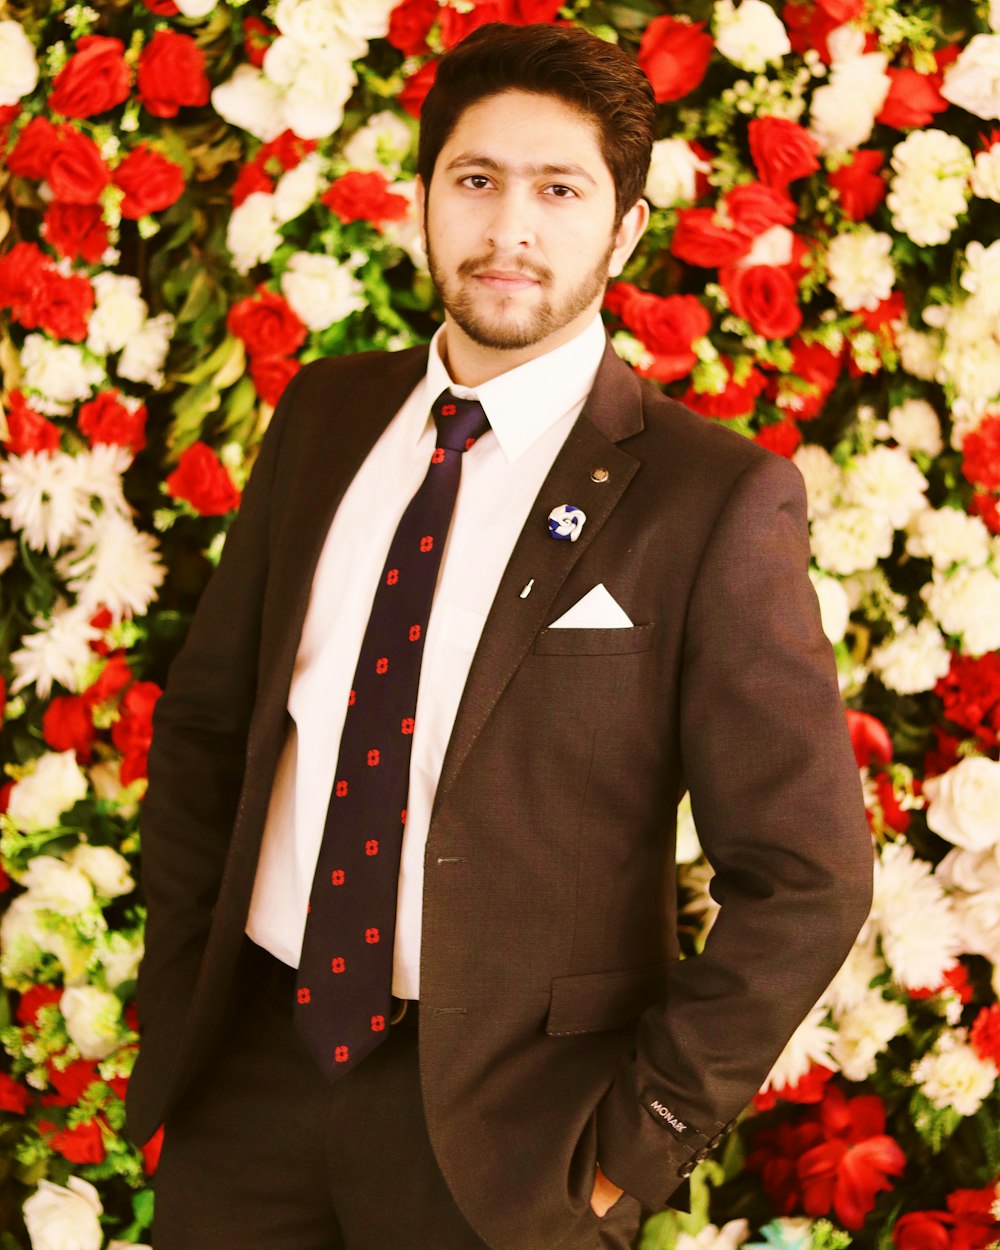 Mann im schwarzen Anzug steht vor rot-weißem Blumenstrauß